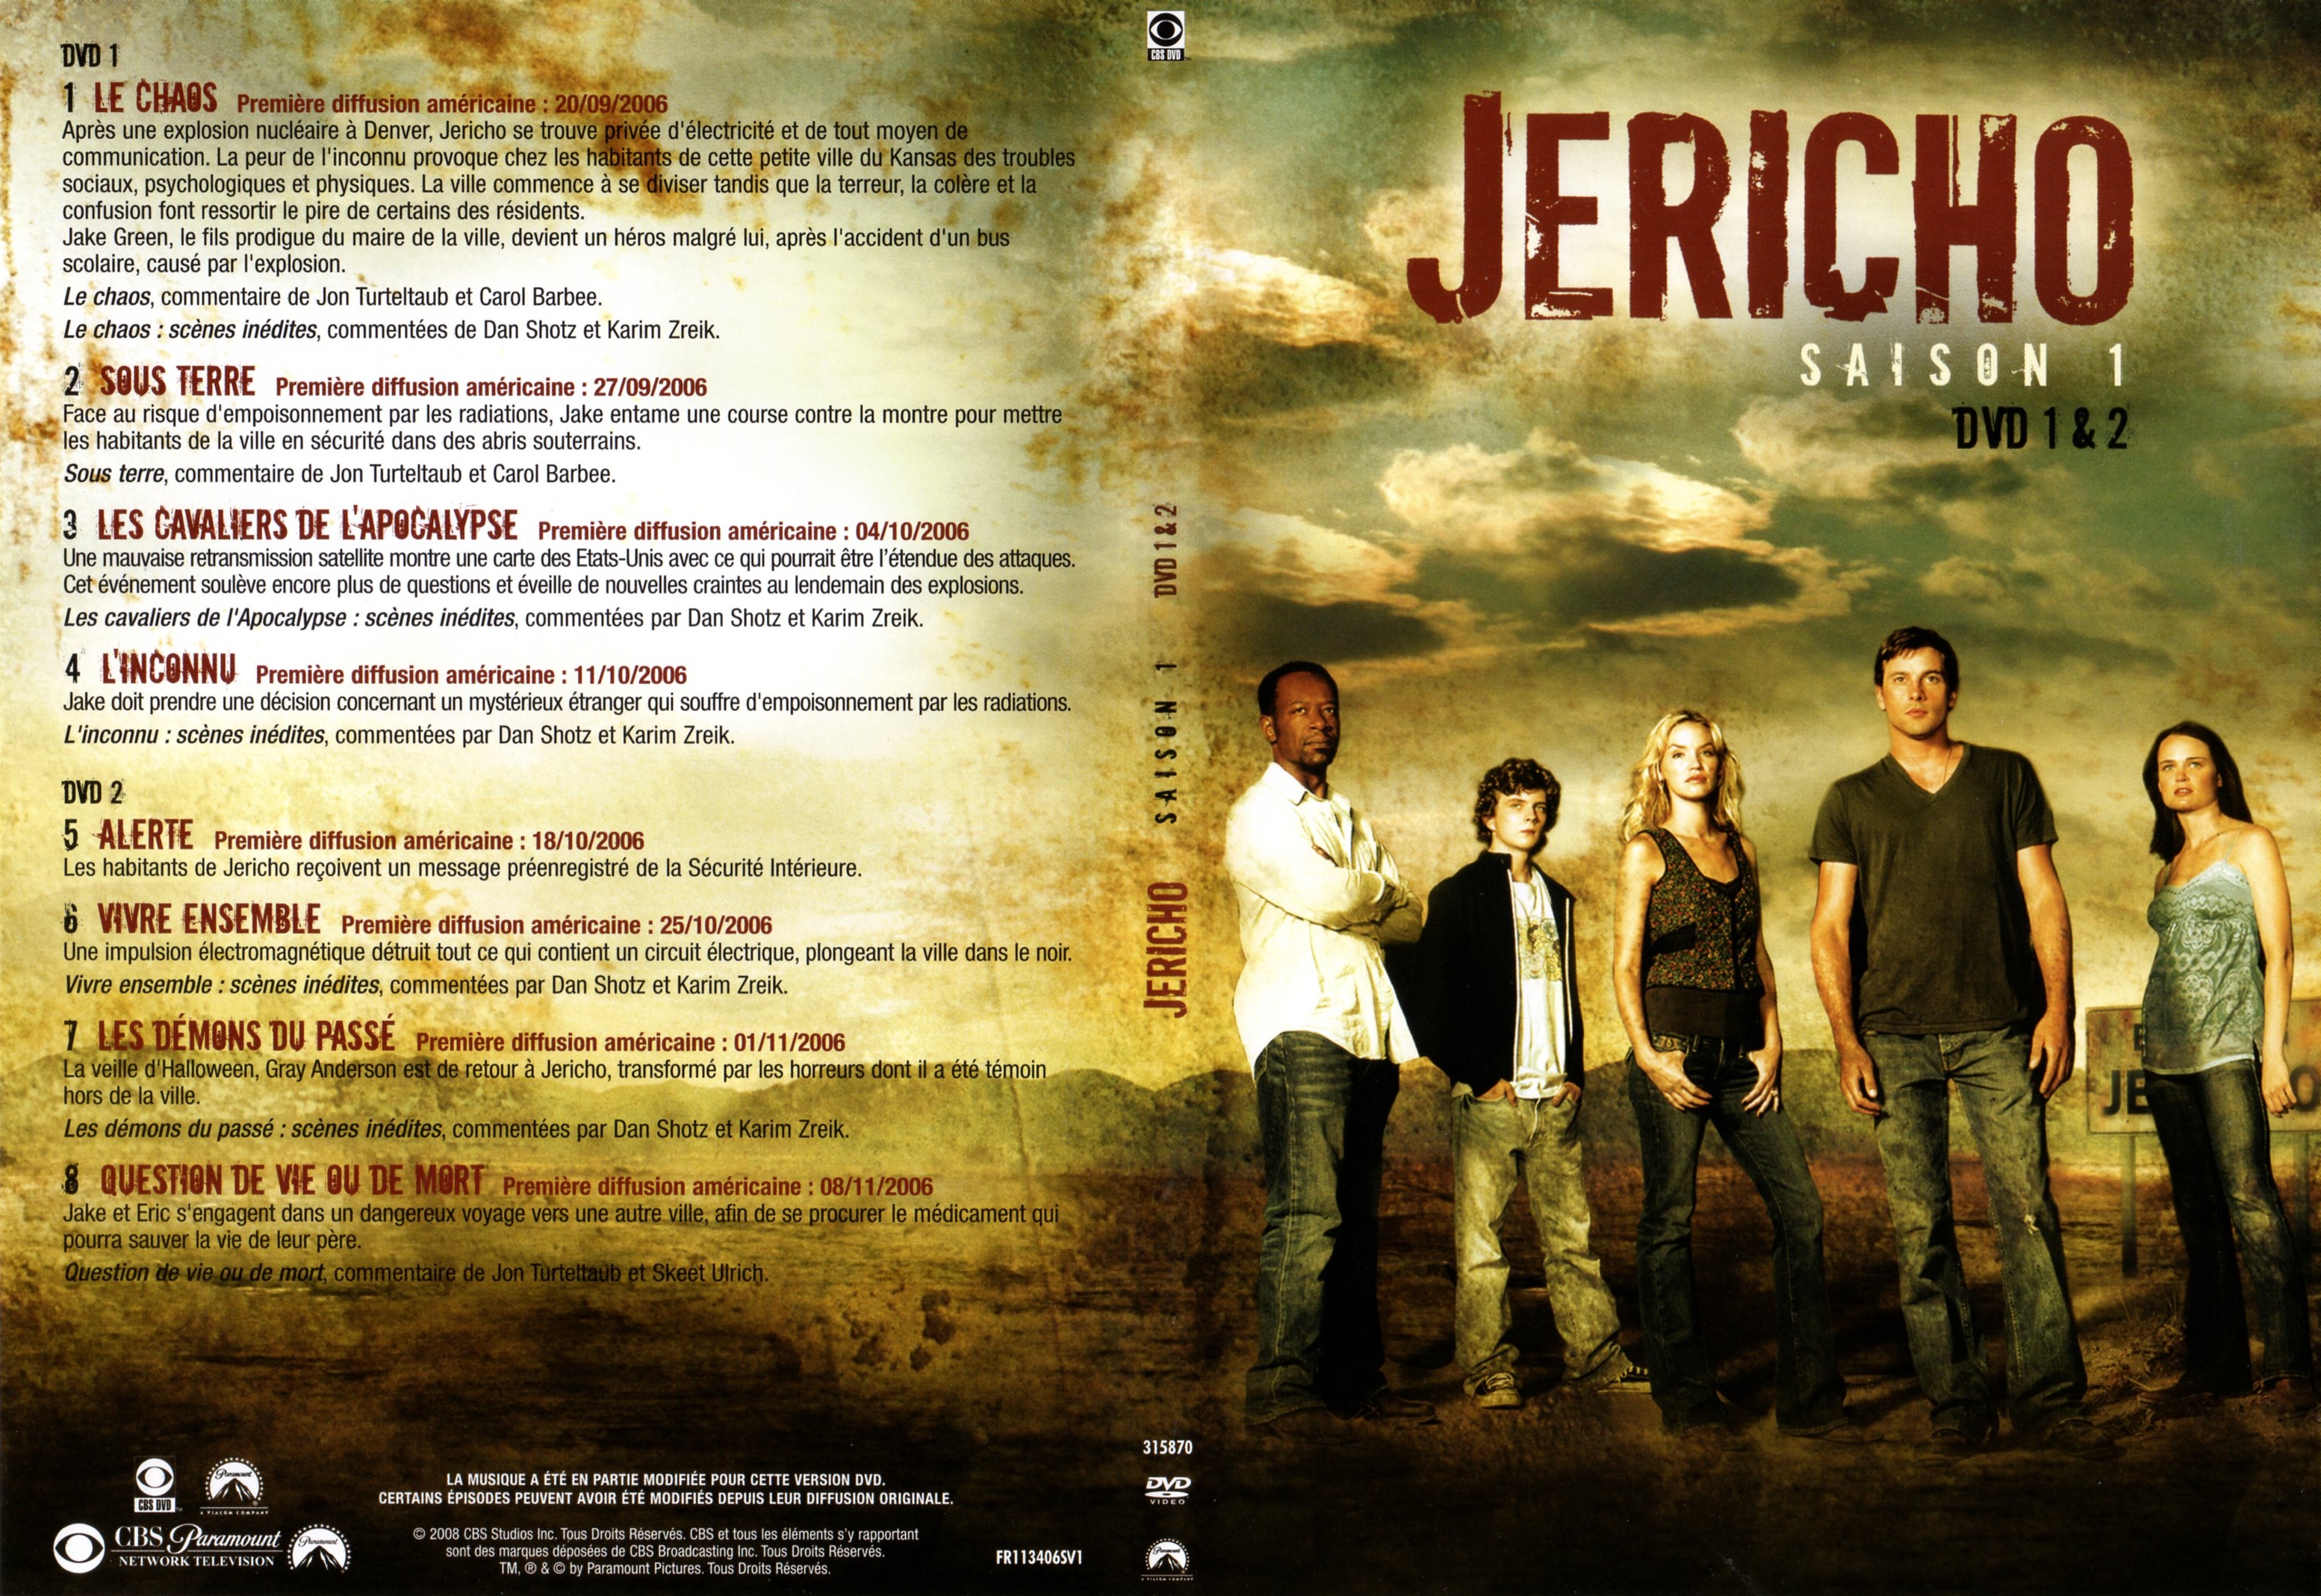 Jaquette DVD Jericho Saison 1 DVD 1